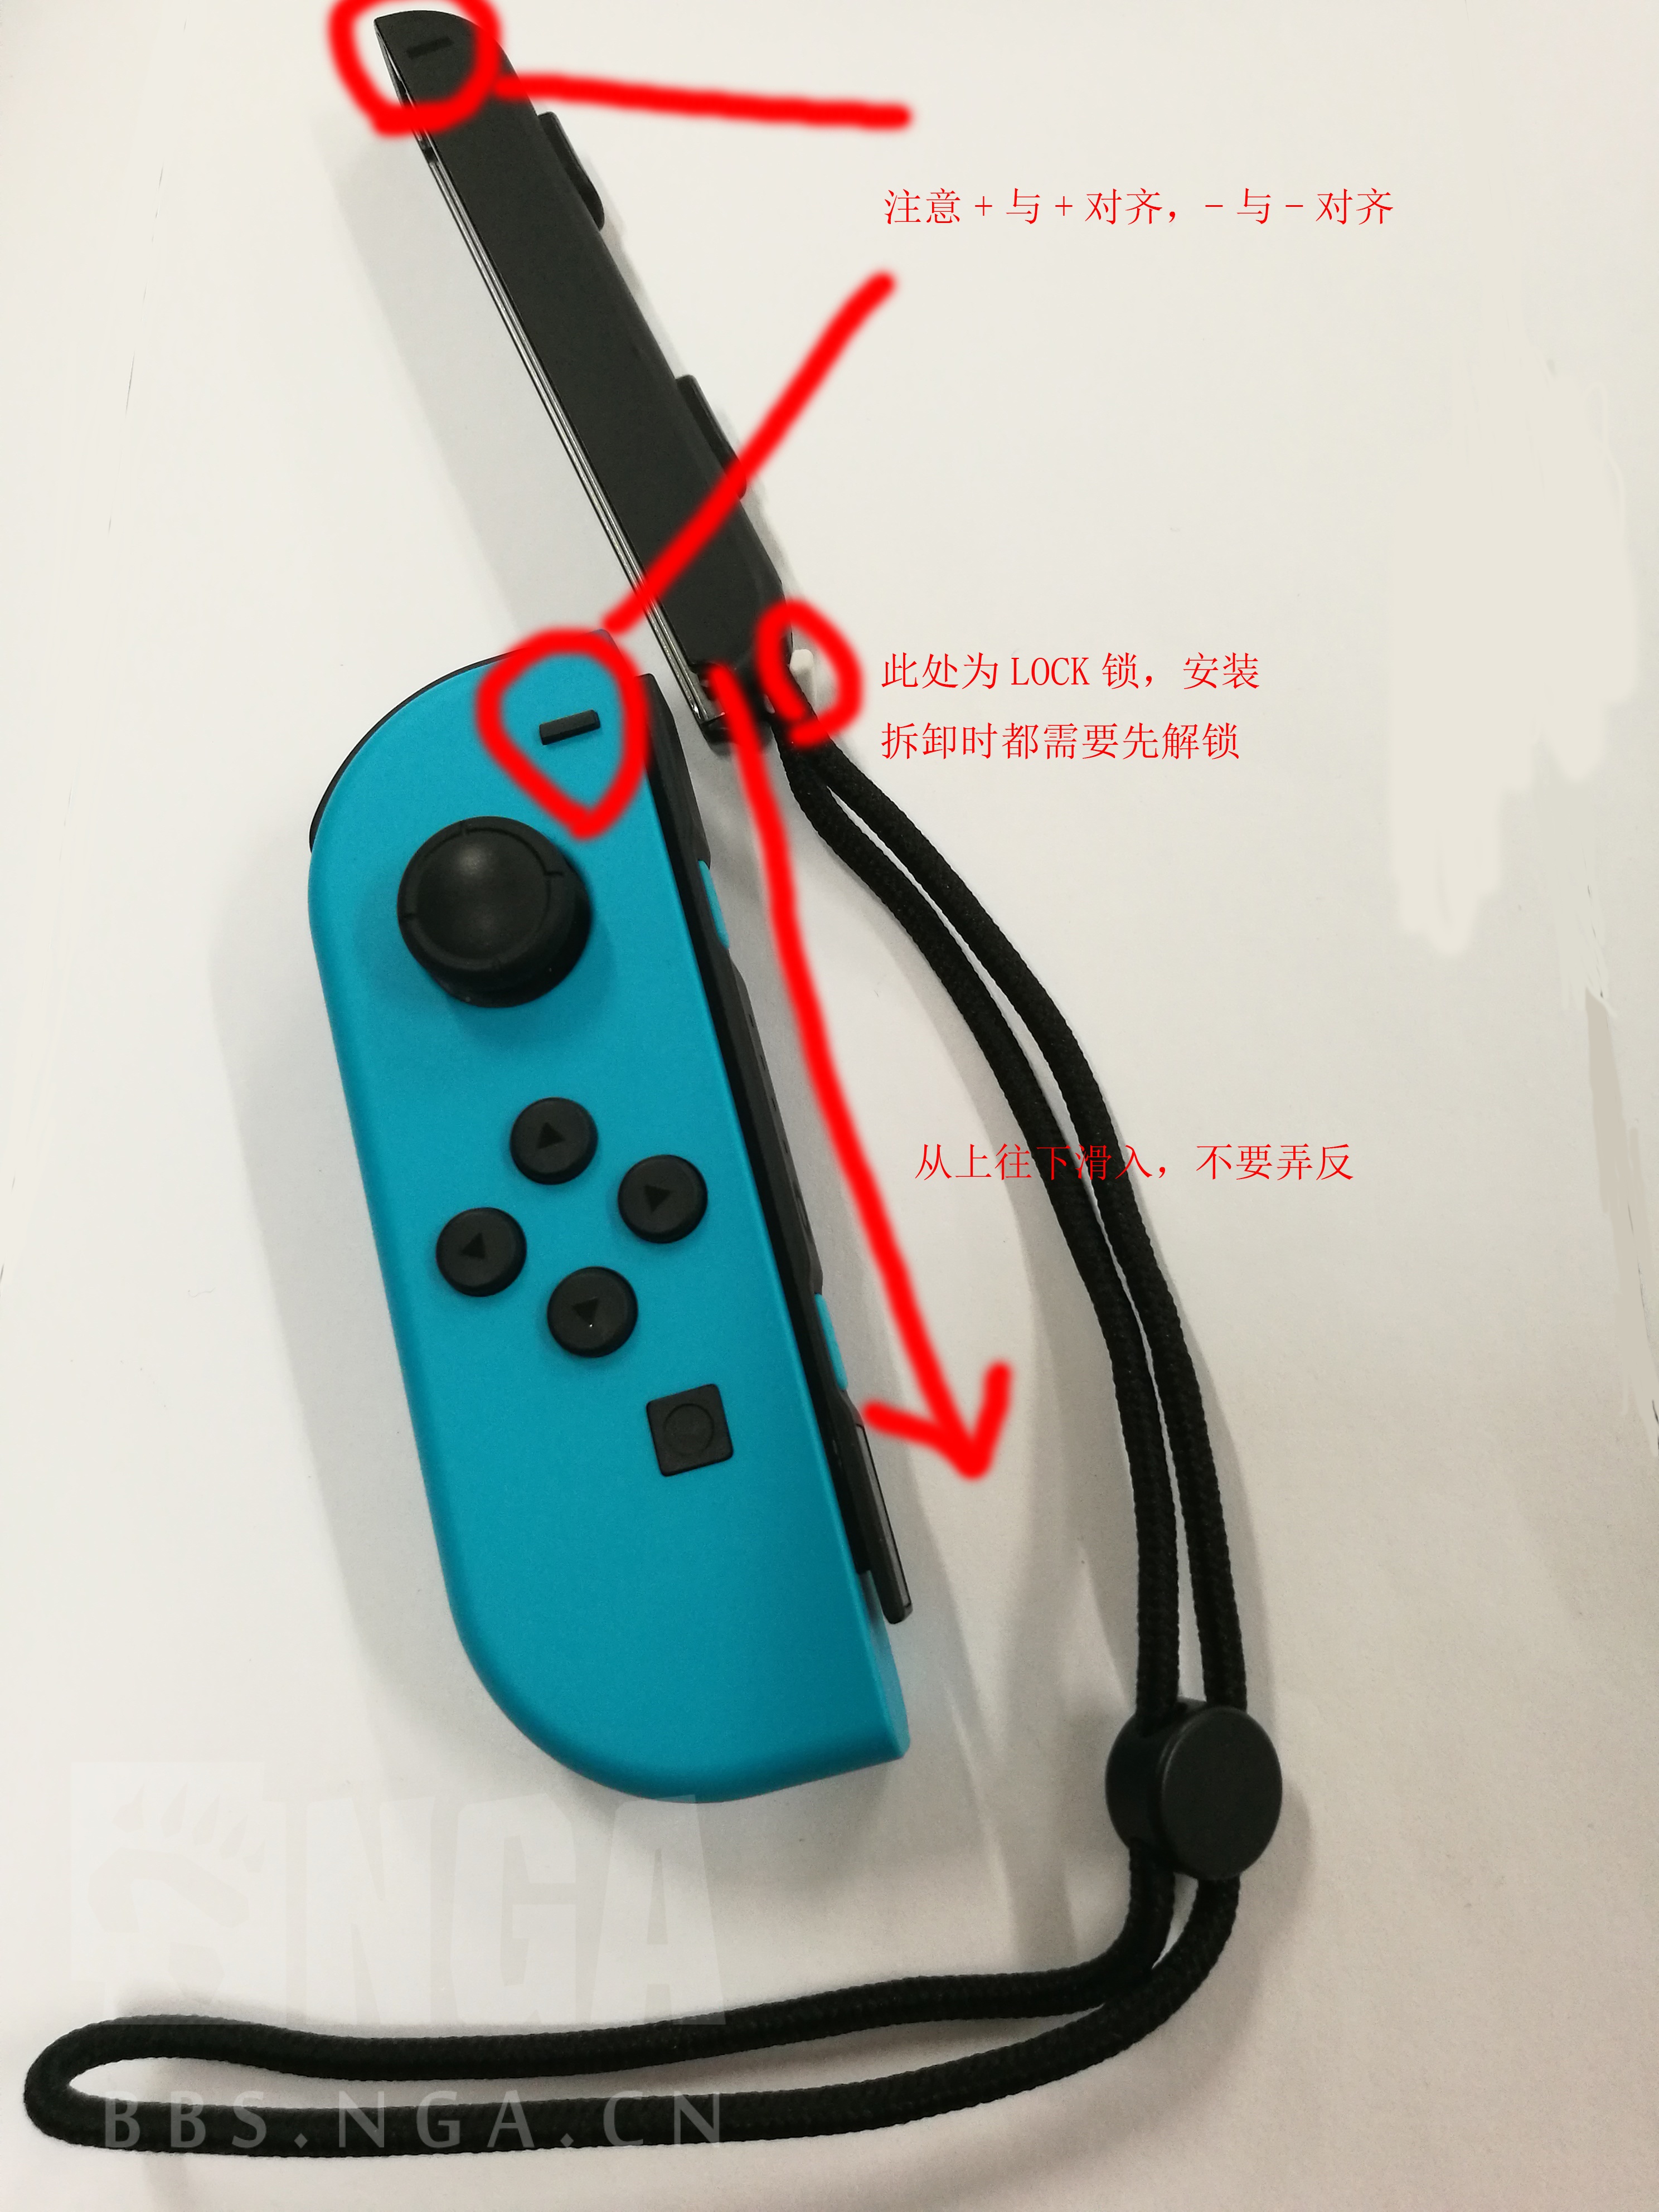 攻略心得] [NS] [讨论] Nintendo Switch入门简易扫盲贴，欢迎提问及补充178